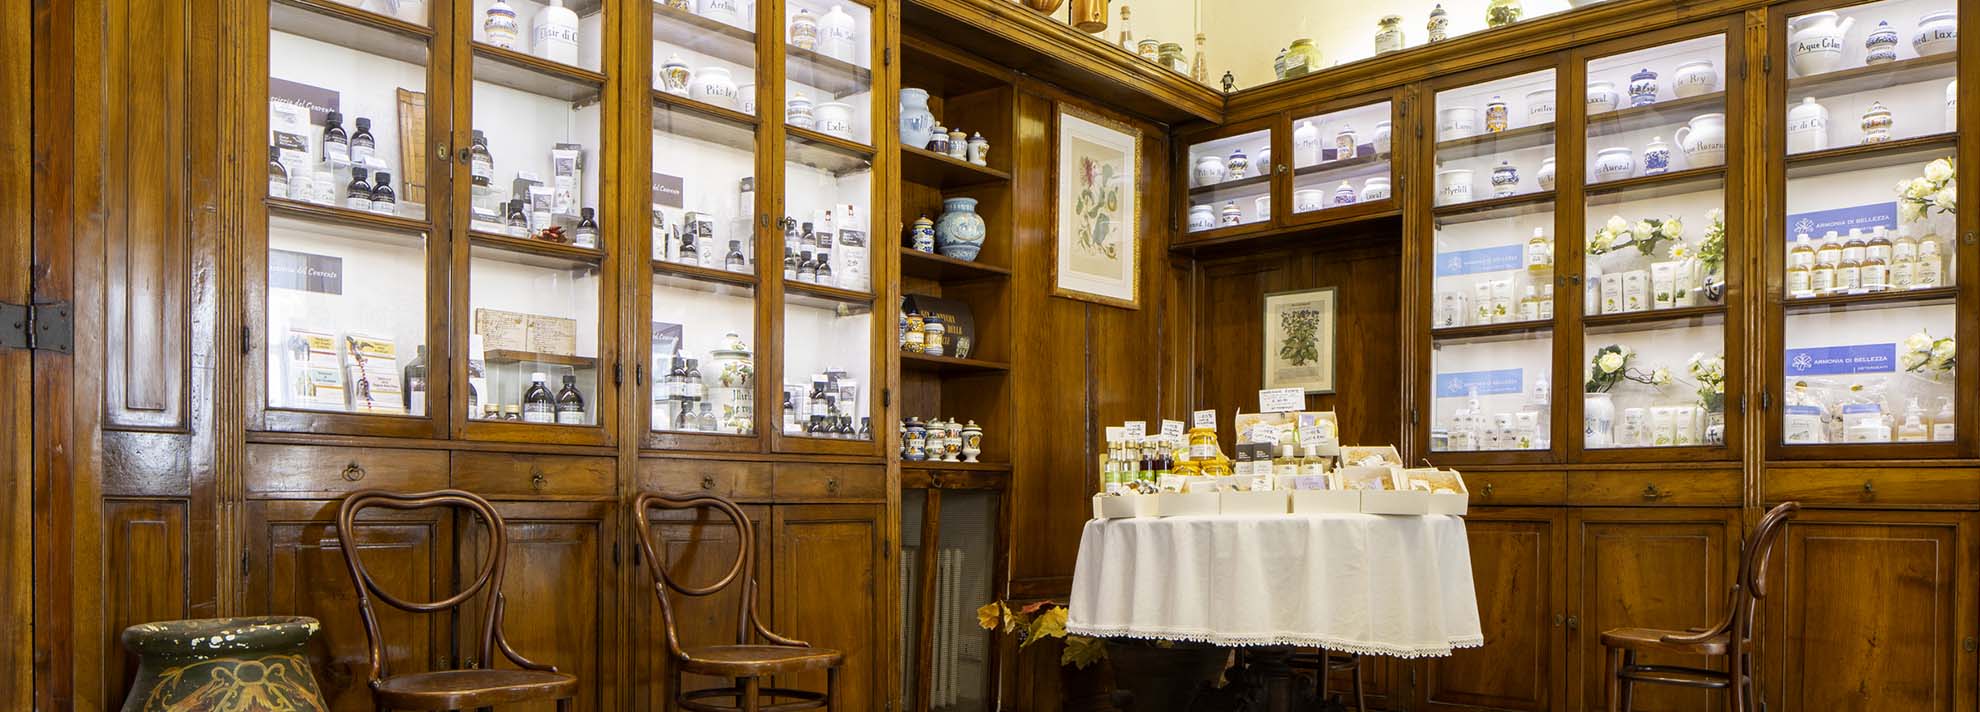 La farmacia più antica d’Italia: Farmacia Sant’Anna